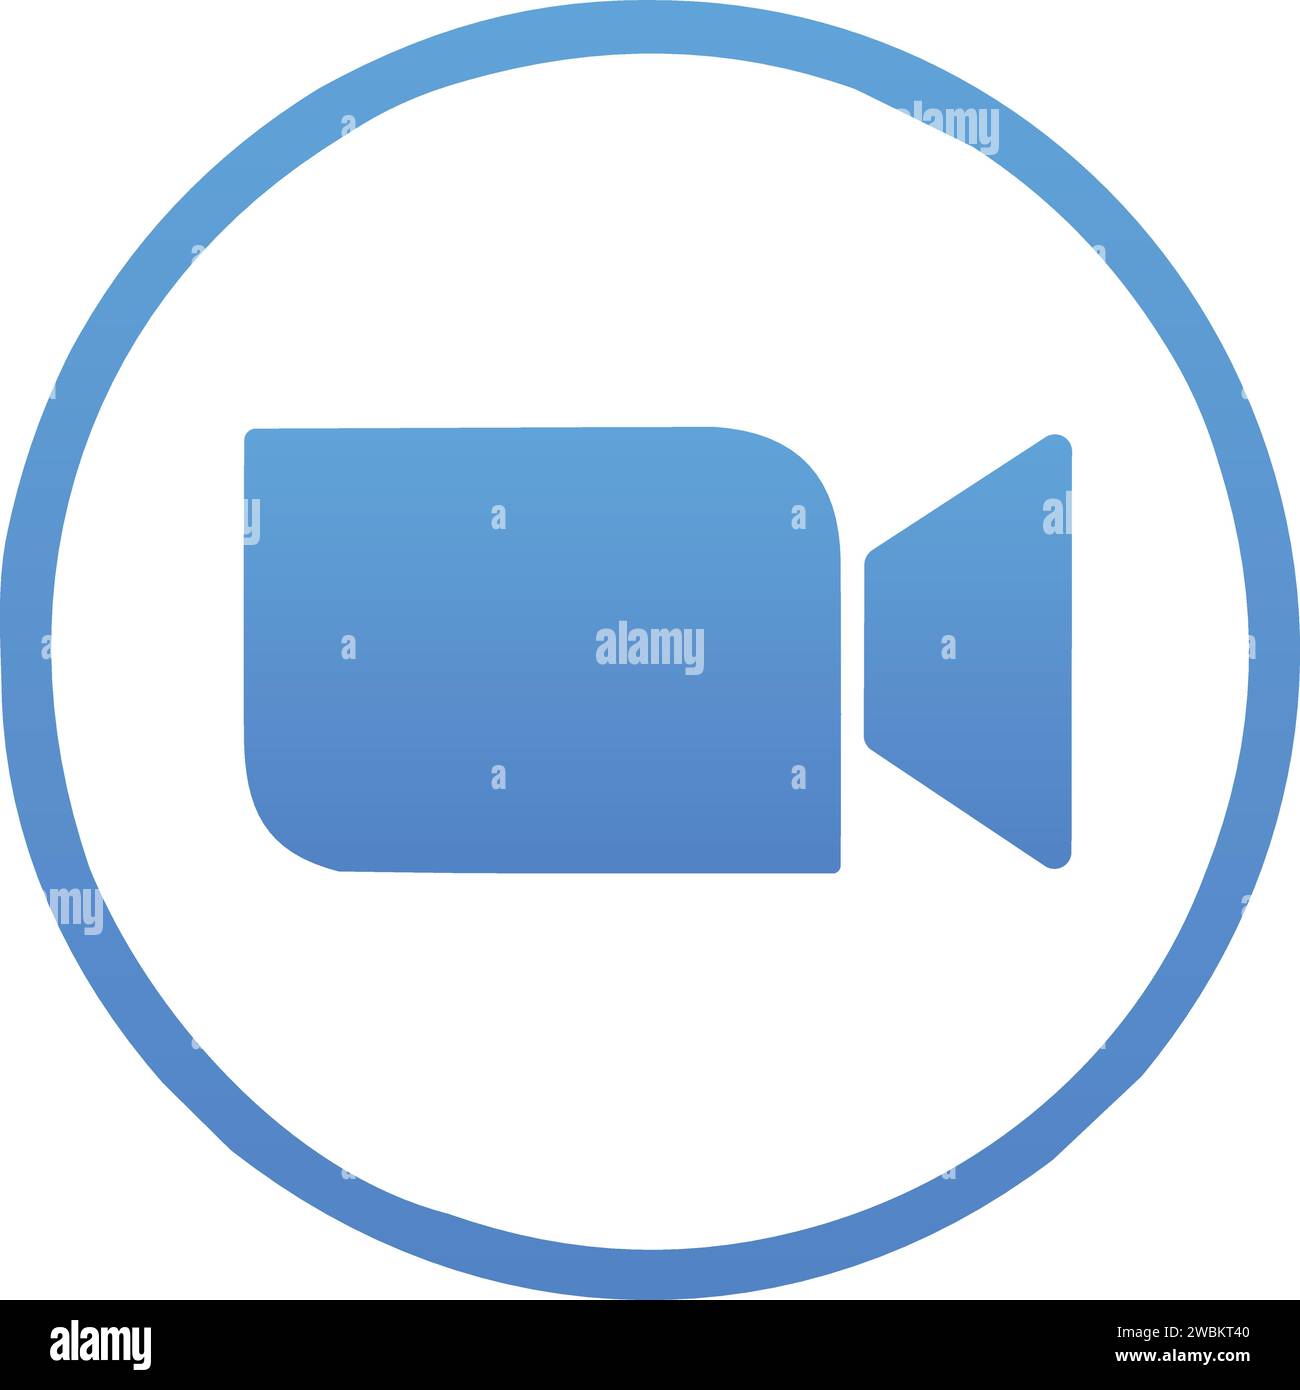 Logo de l'application Zoom. Application pour les communications vidéo avec plate-forme cloud pour les conférences vidéo et audio, le chat et les webinaires. Icône caméra bleue. social Illustration de Vecteur